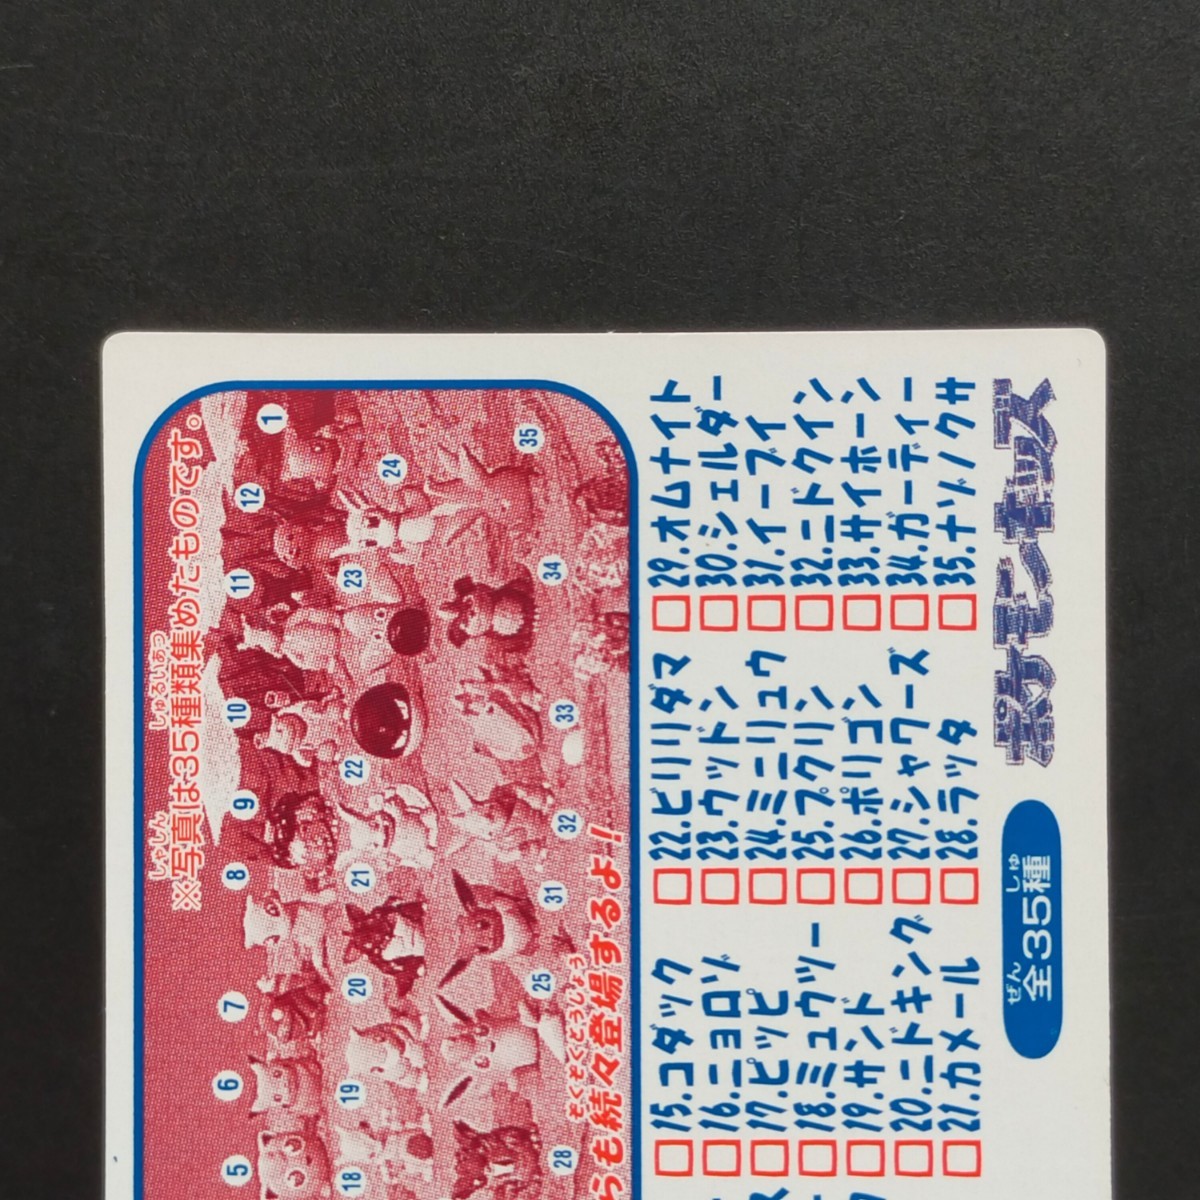 1995年初期 ポニータ ポケモン キッズ カード Nintendo 「ゼニガメ リザードン フシギダネ ヒトカゲ ピカチュウ ヤドラン ミュウ」_画像5